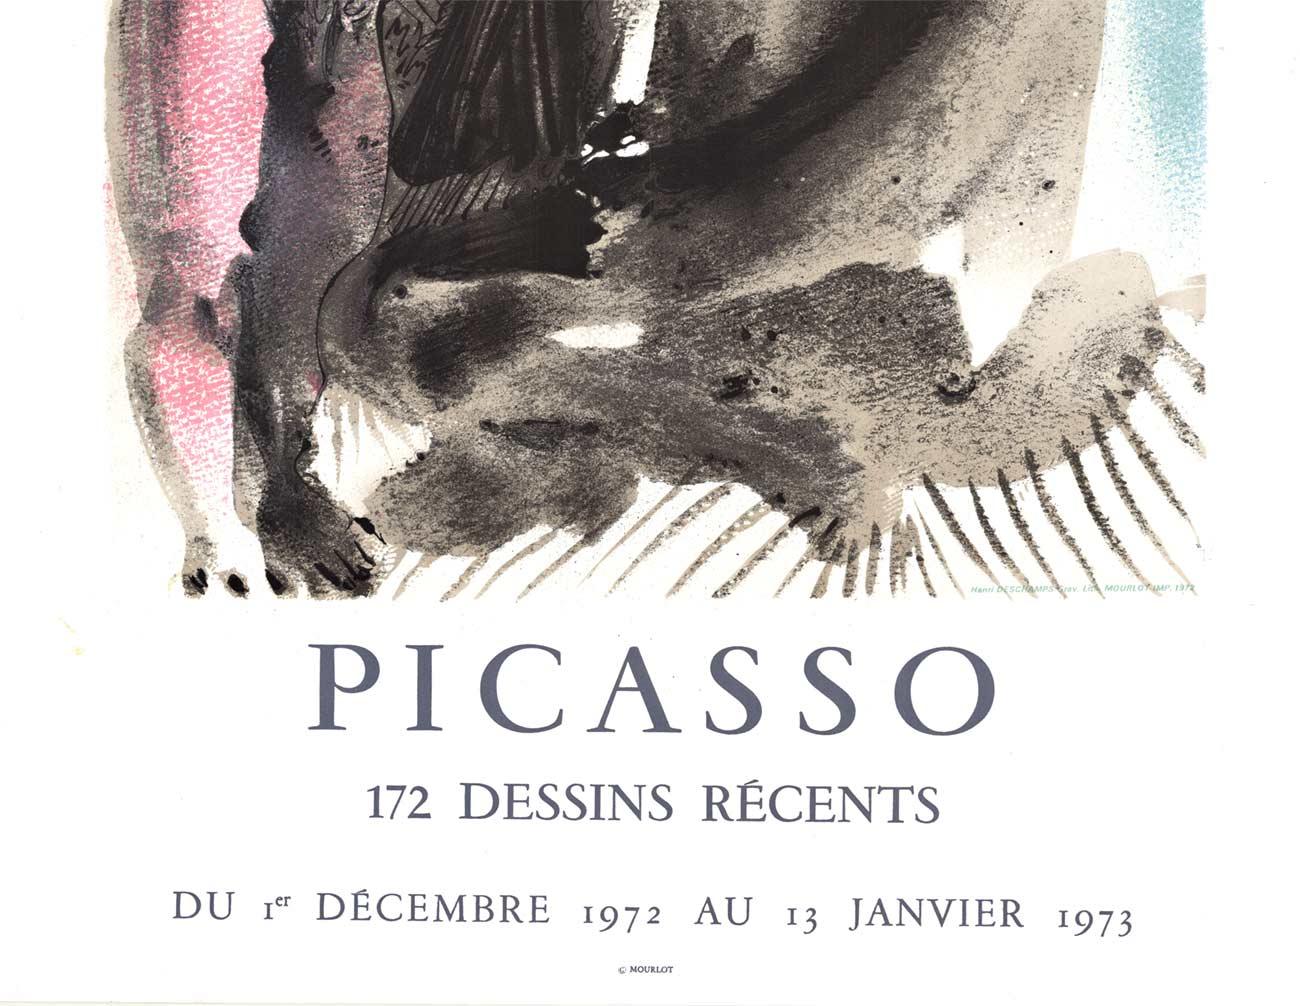 PICASSO, Galerie Louise Leiris, Ausstellungsplakat (Abstrakt), Print, von Pablo Picasso